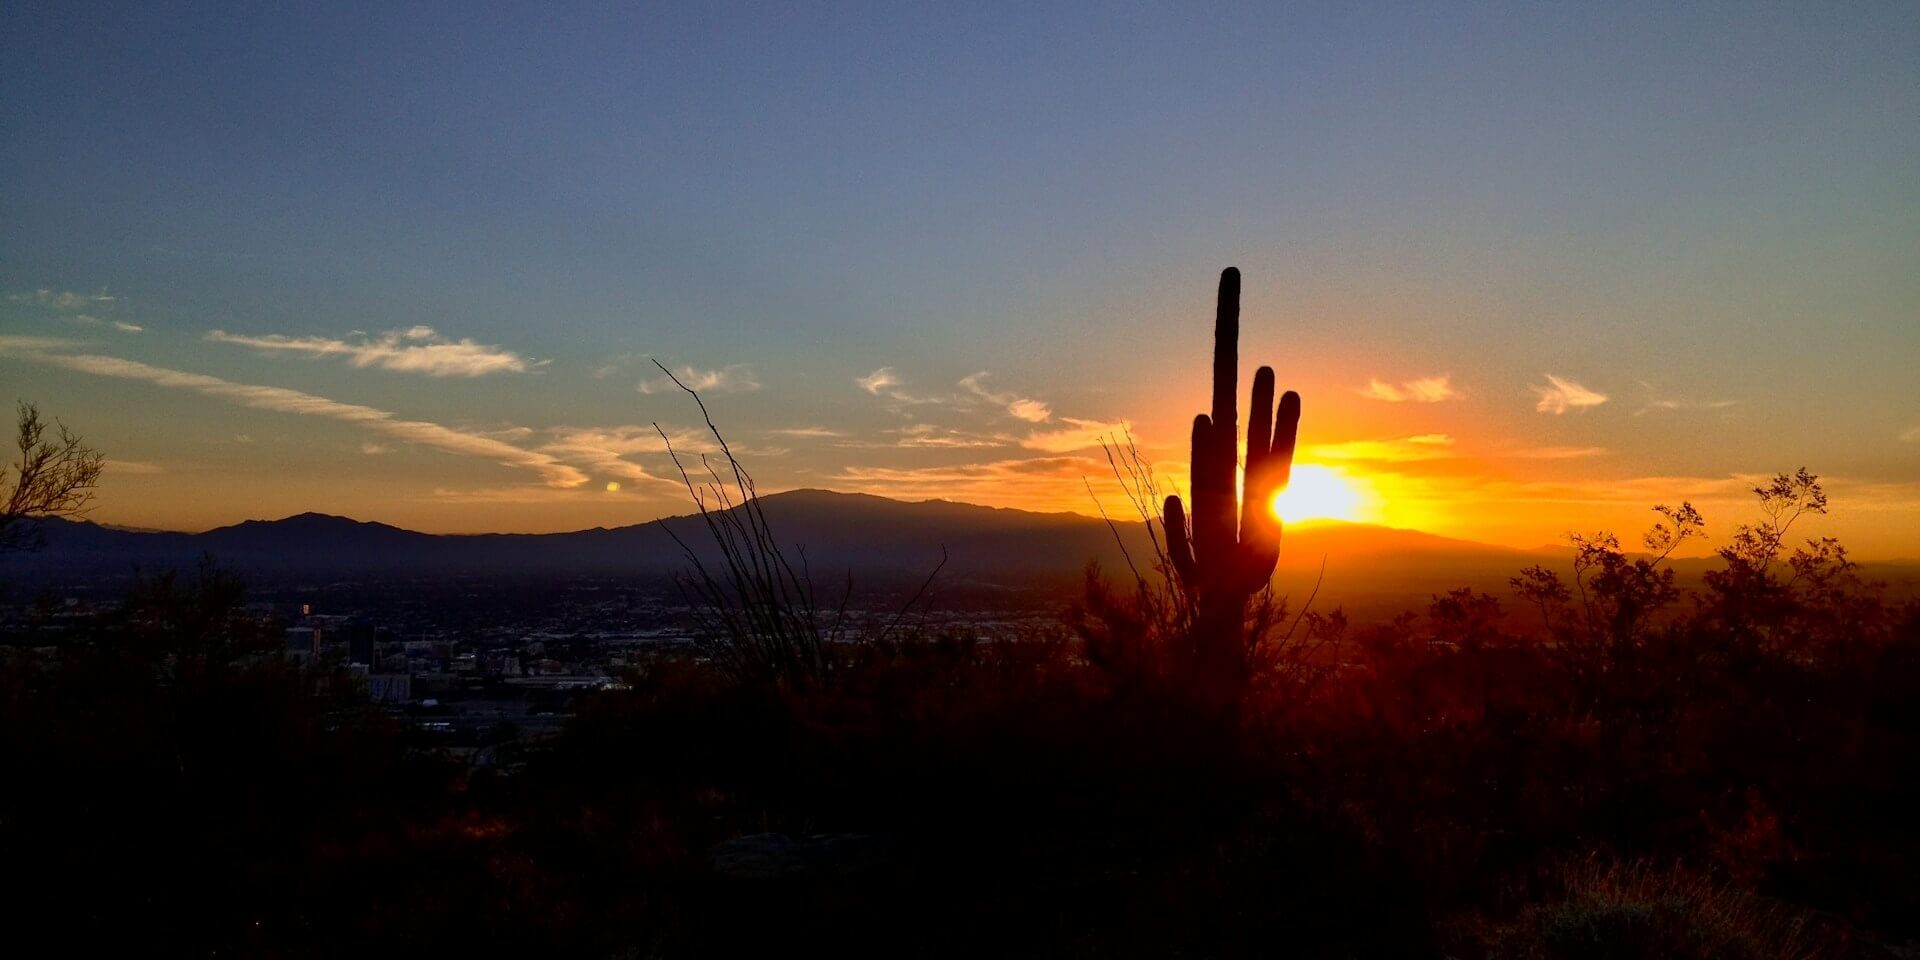 Cactus and mountain in Tucson, AZ.